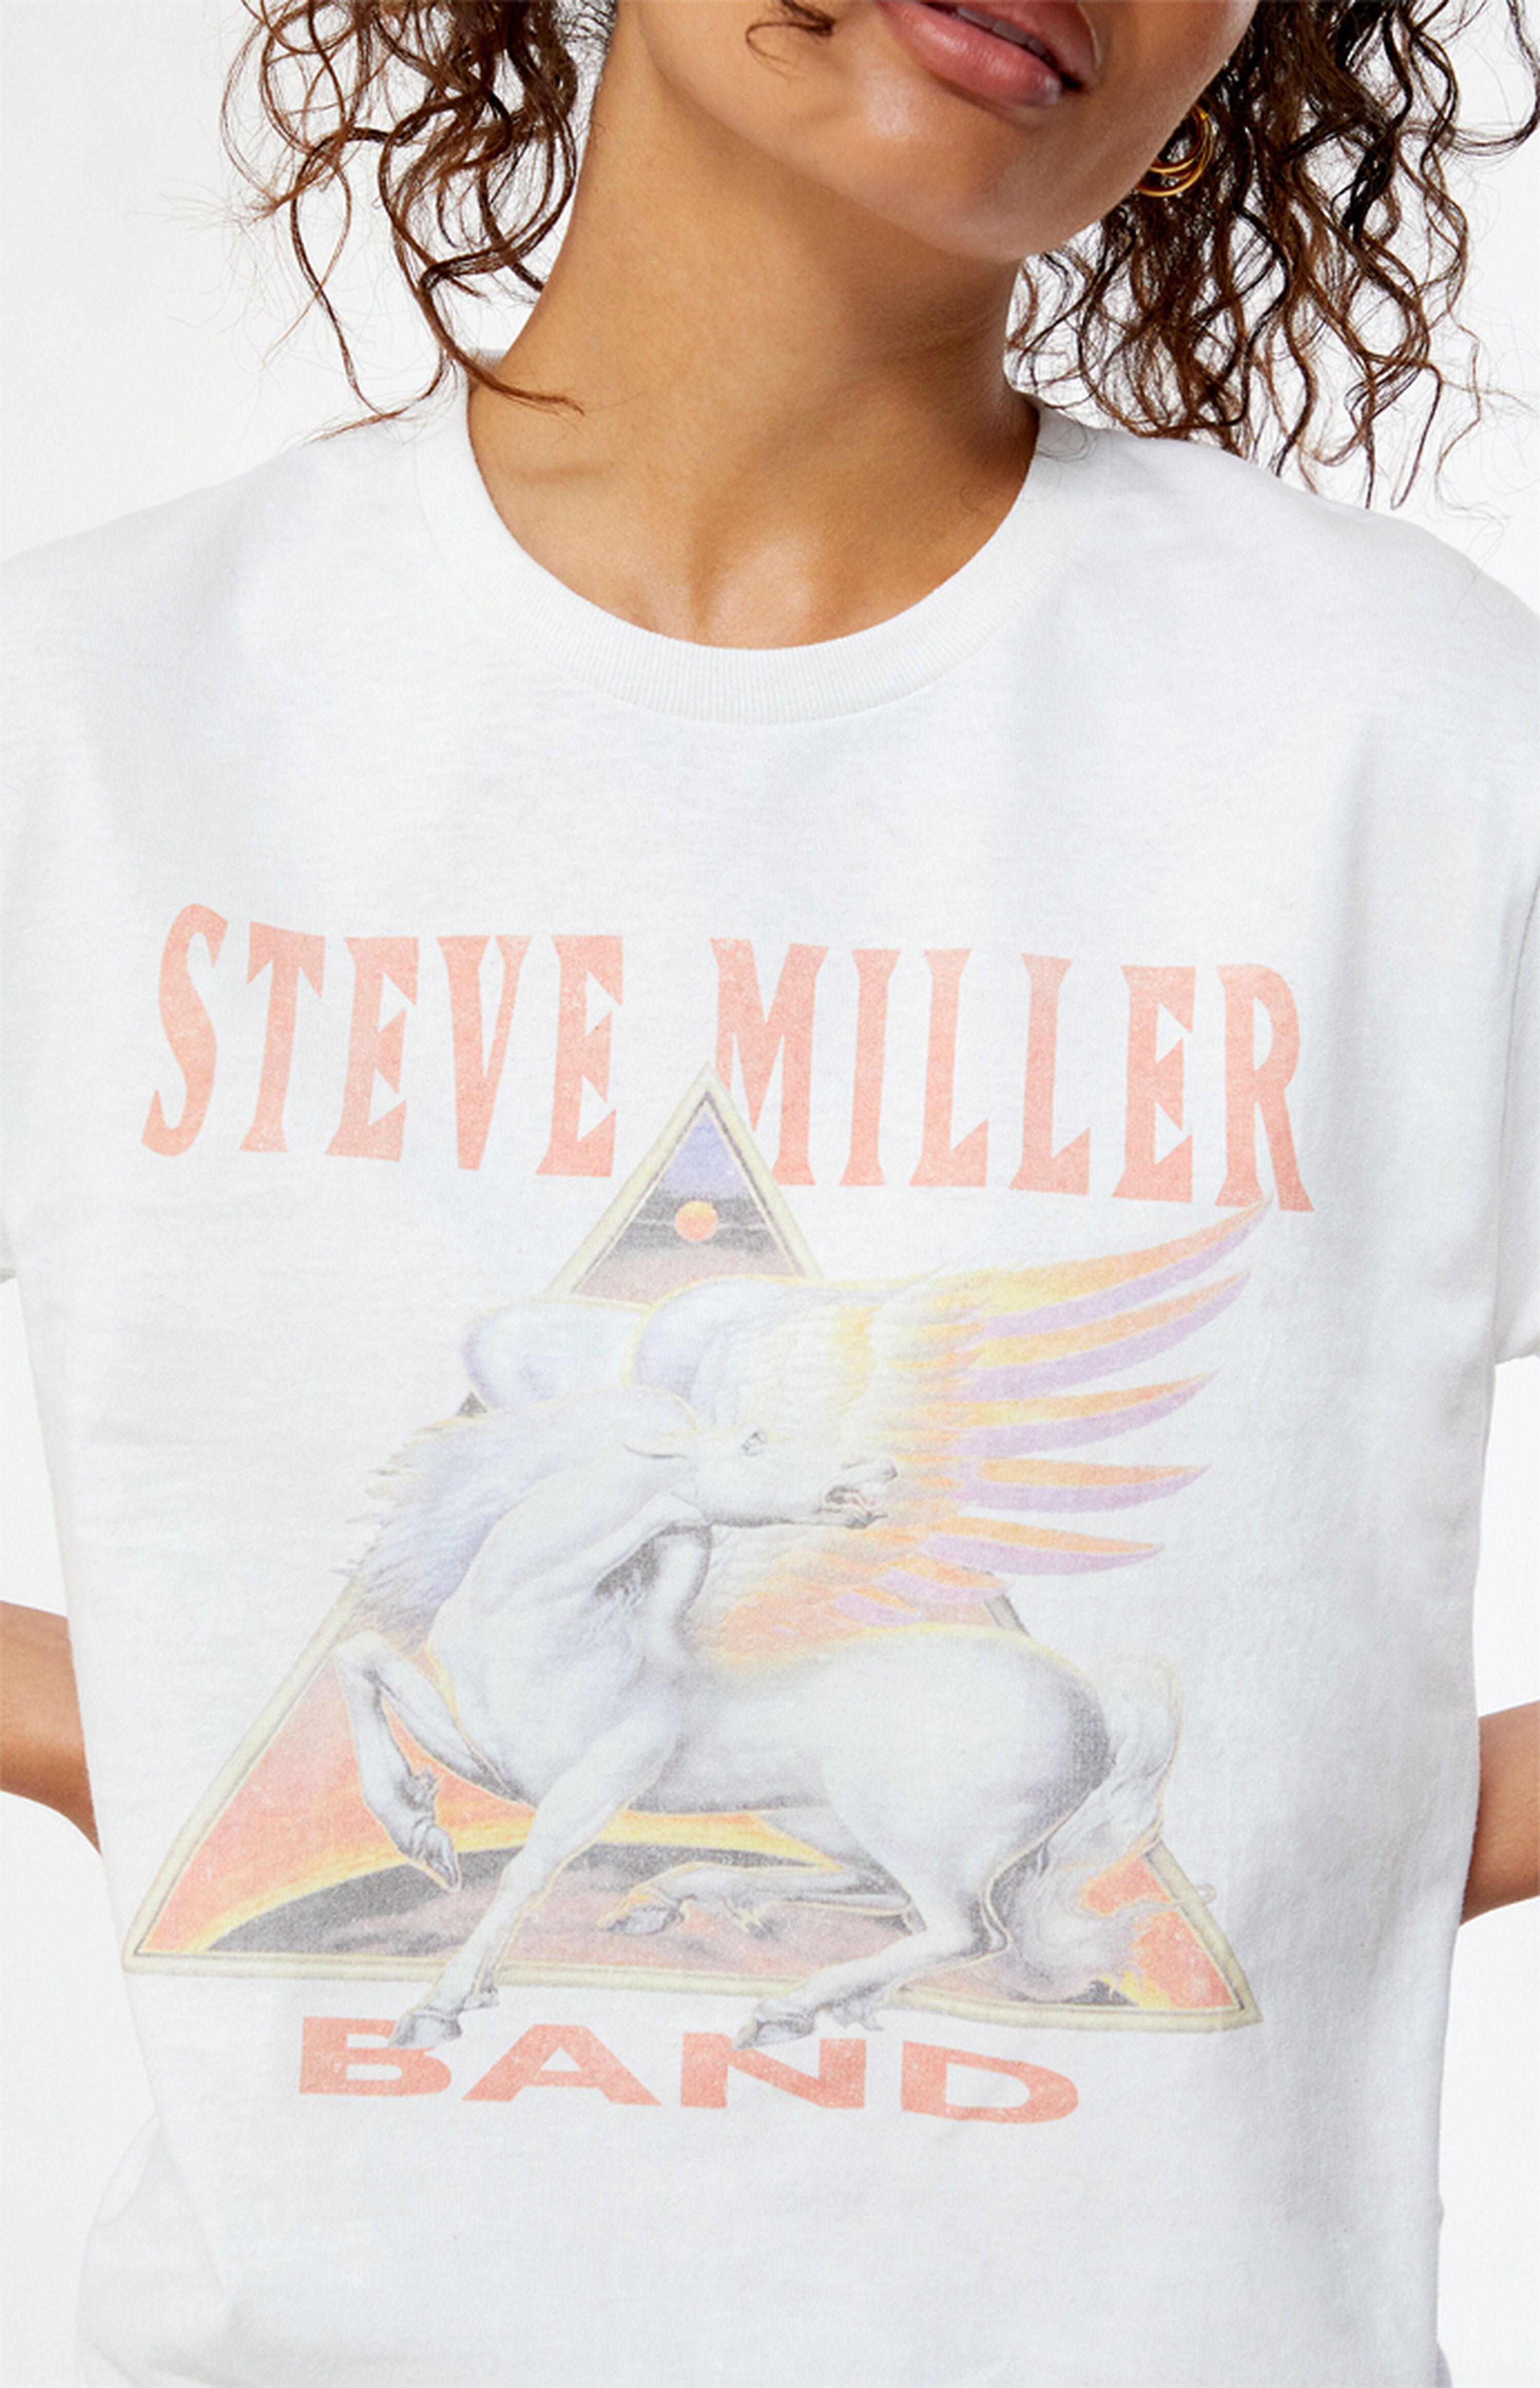 Steve Miller Band T-Shirt | PacSun